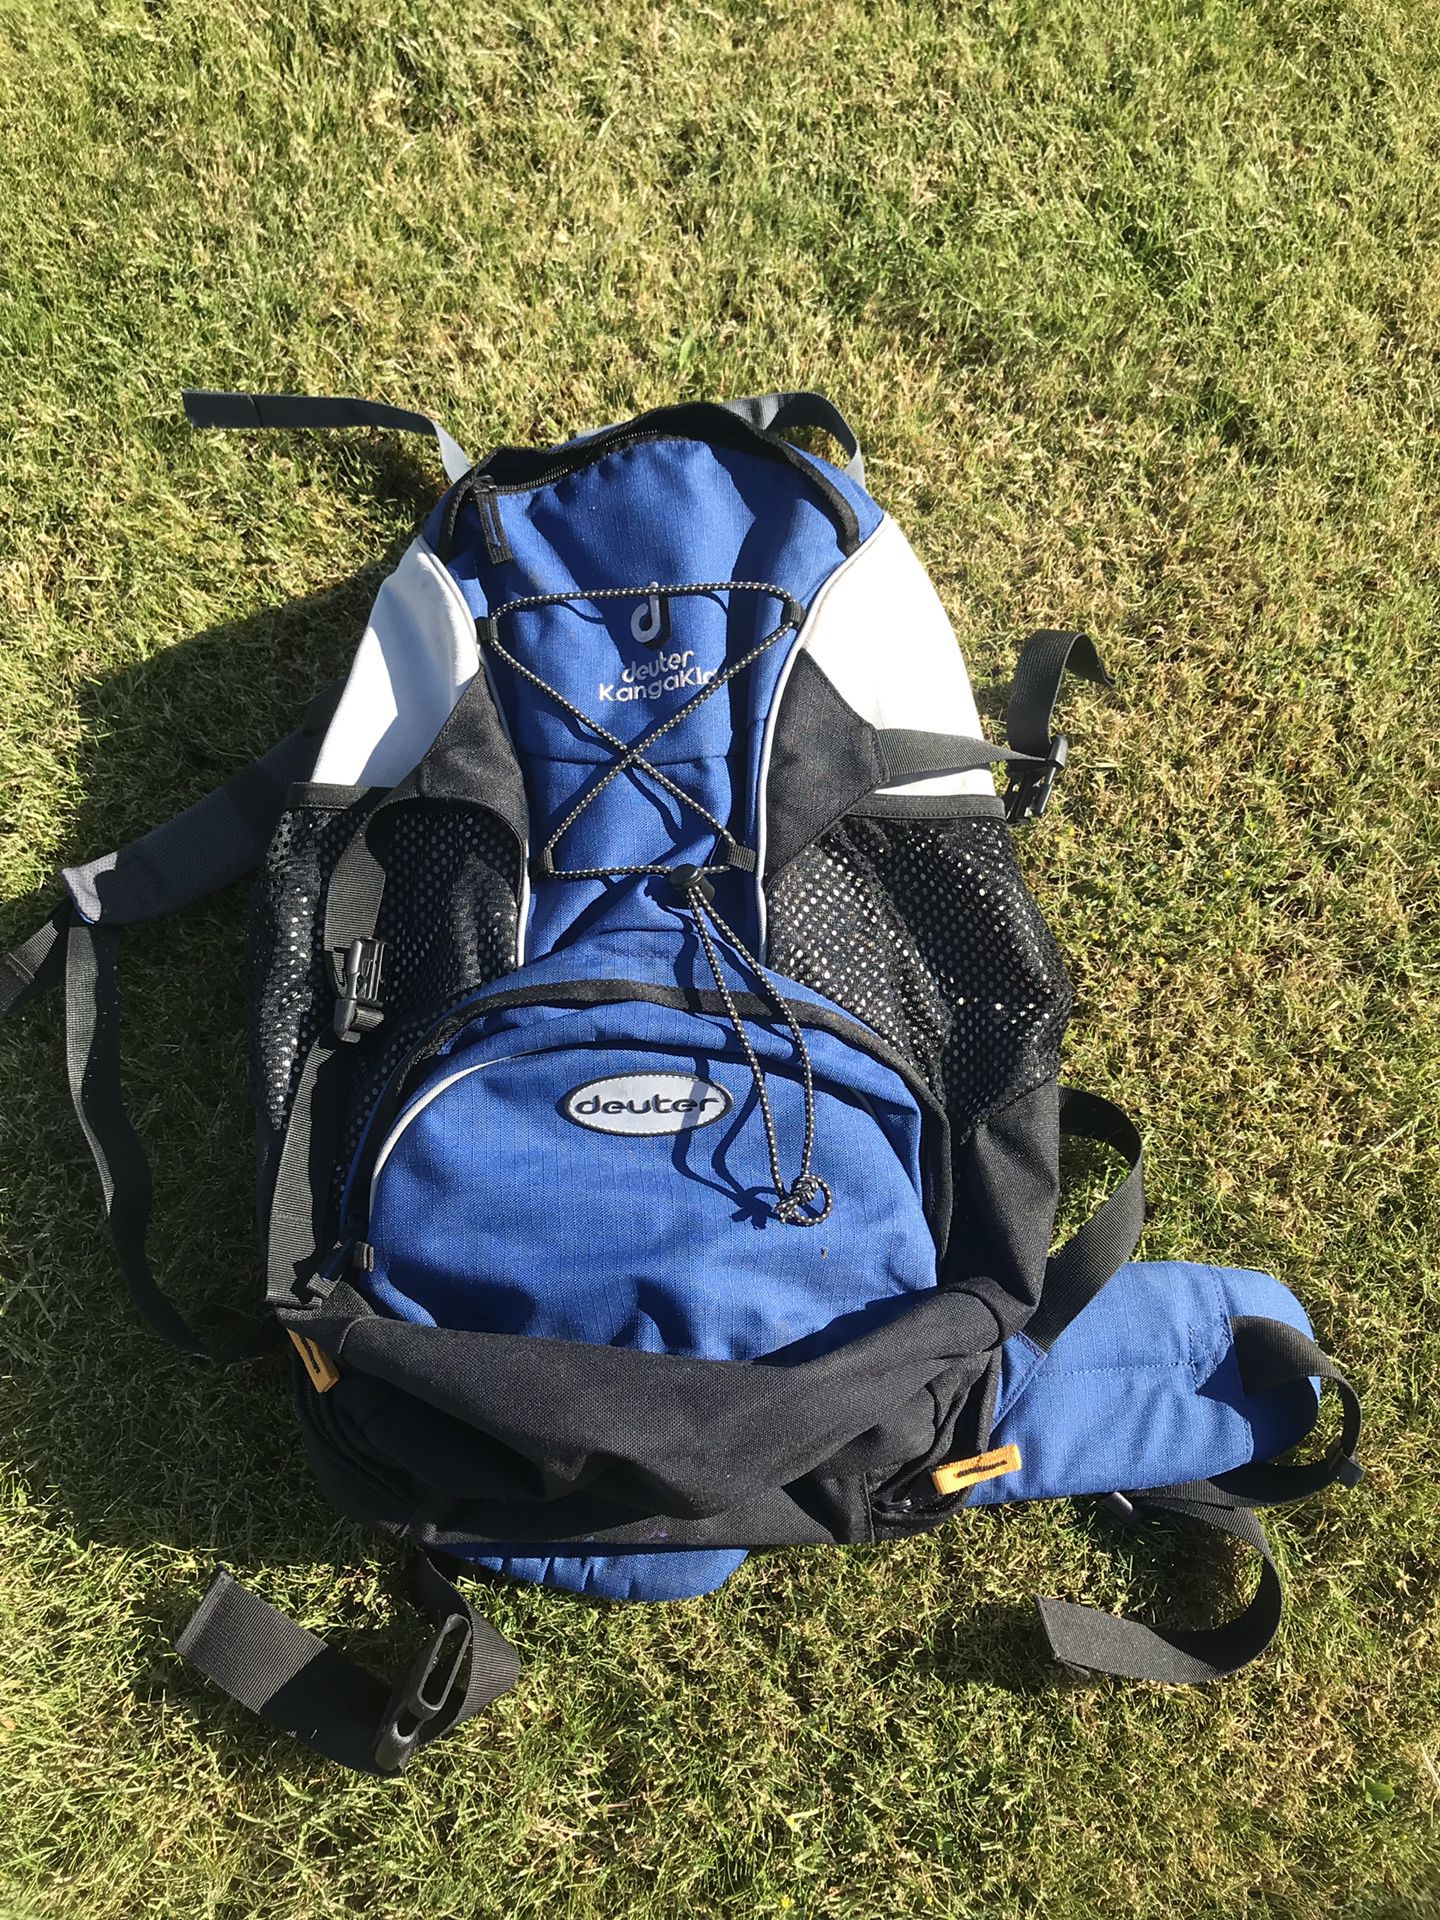 Deuter kanga kid carrier backpack